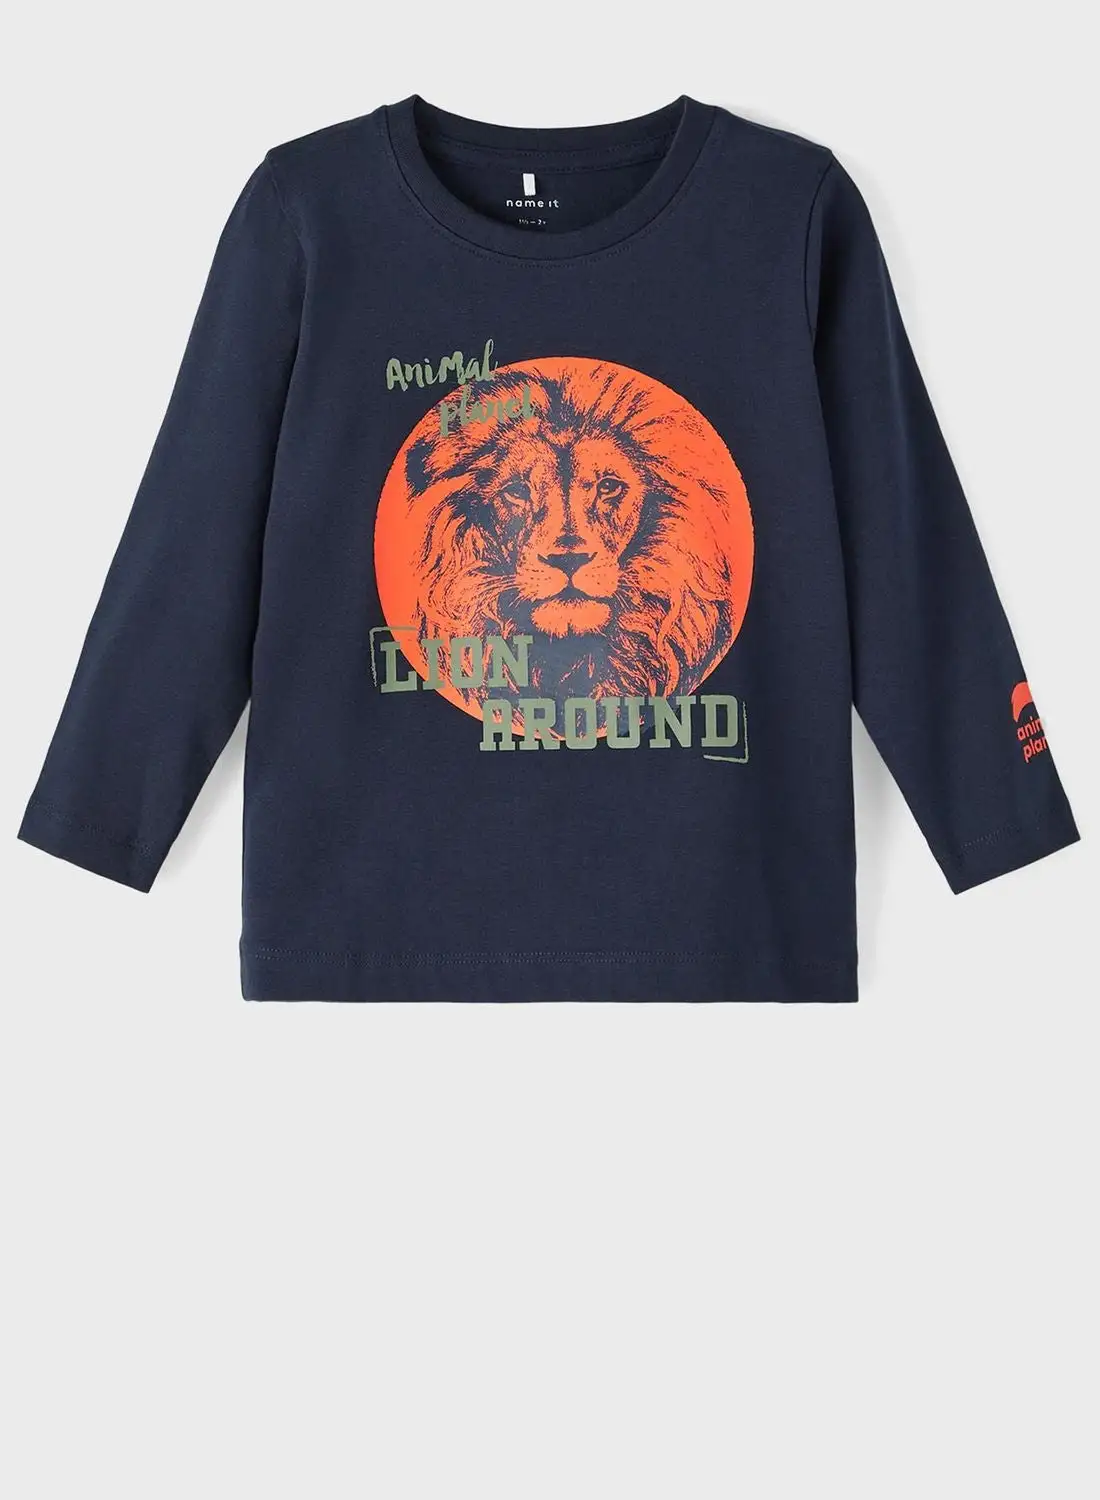 NAME IT Kids Lion Print T-Shirt